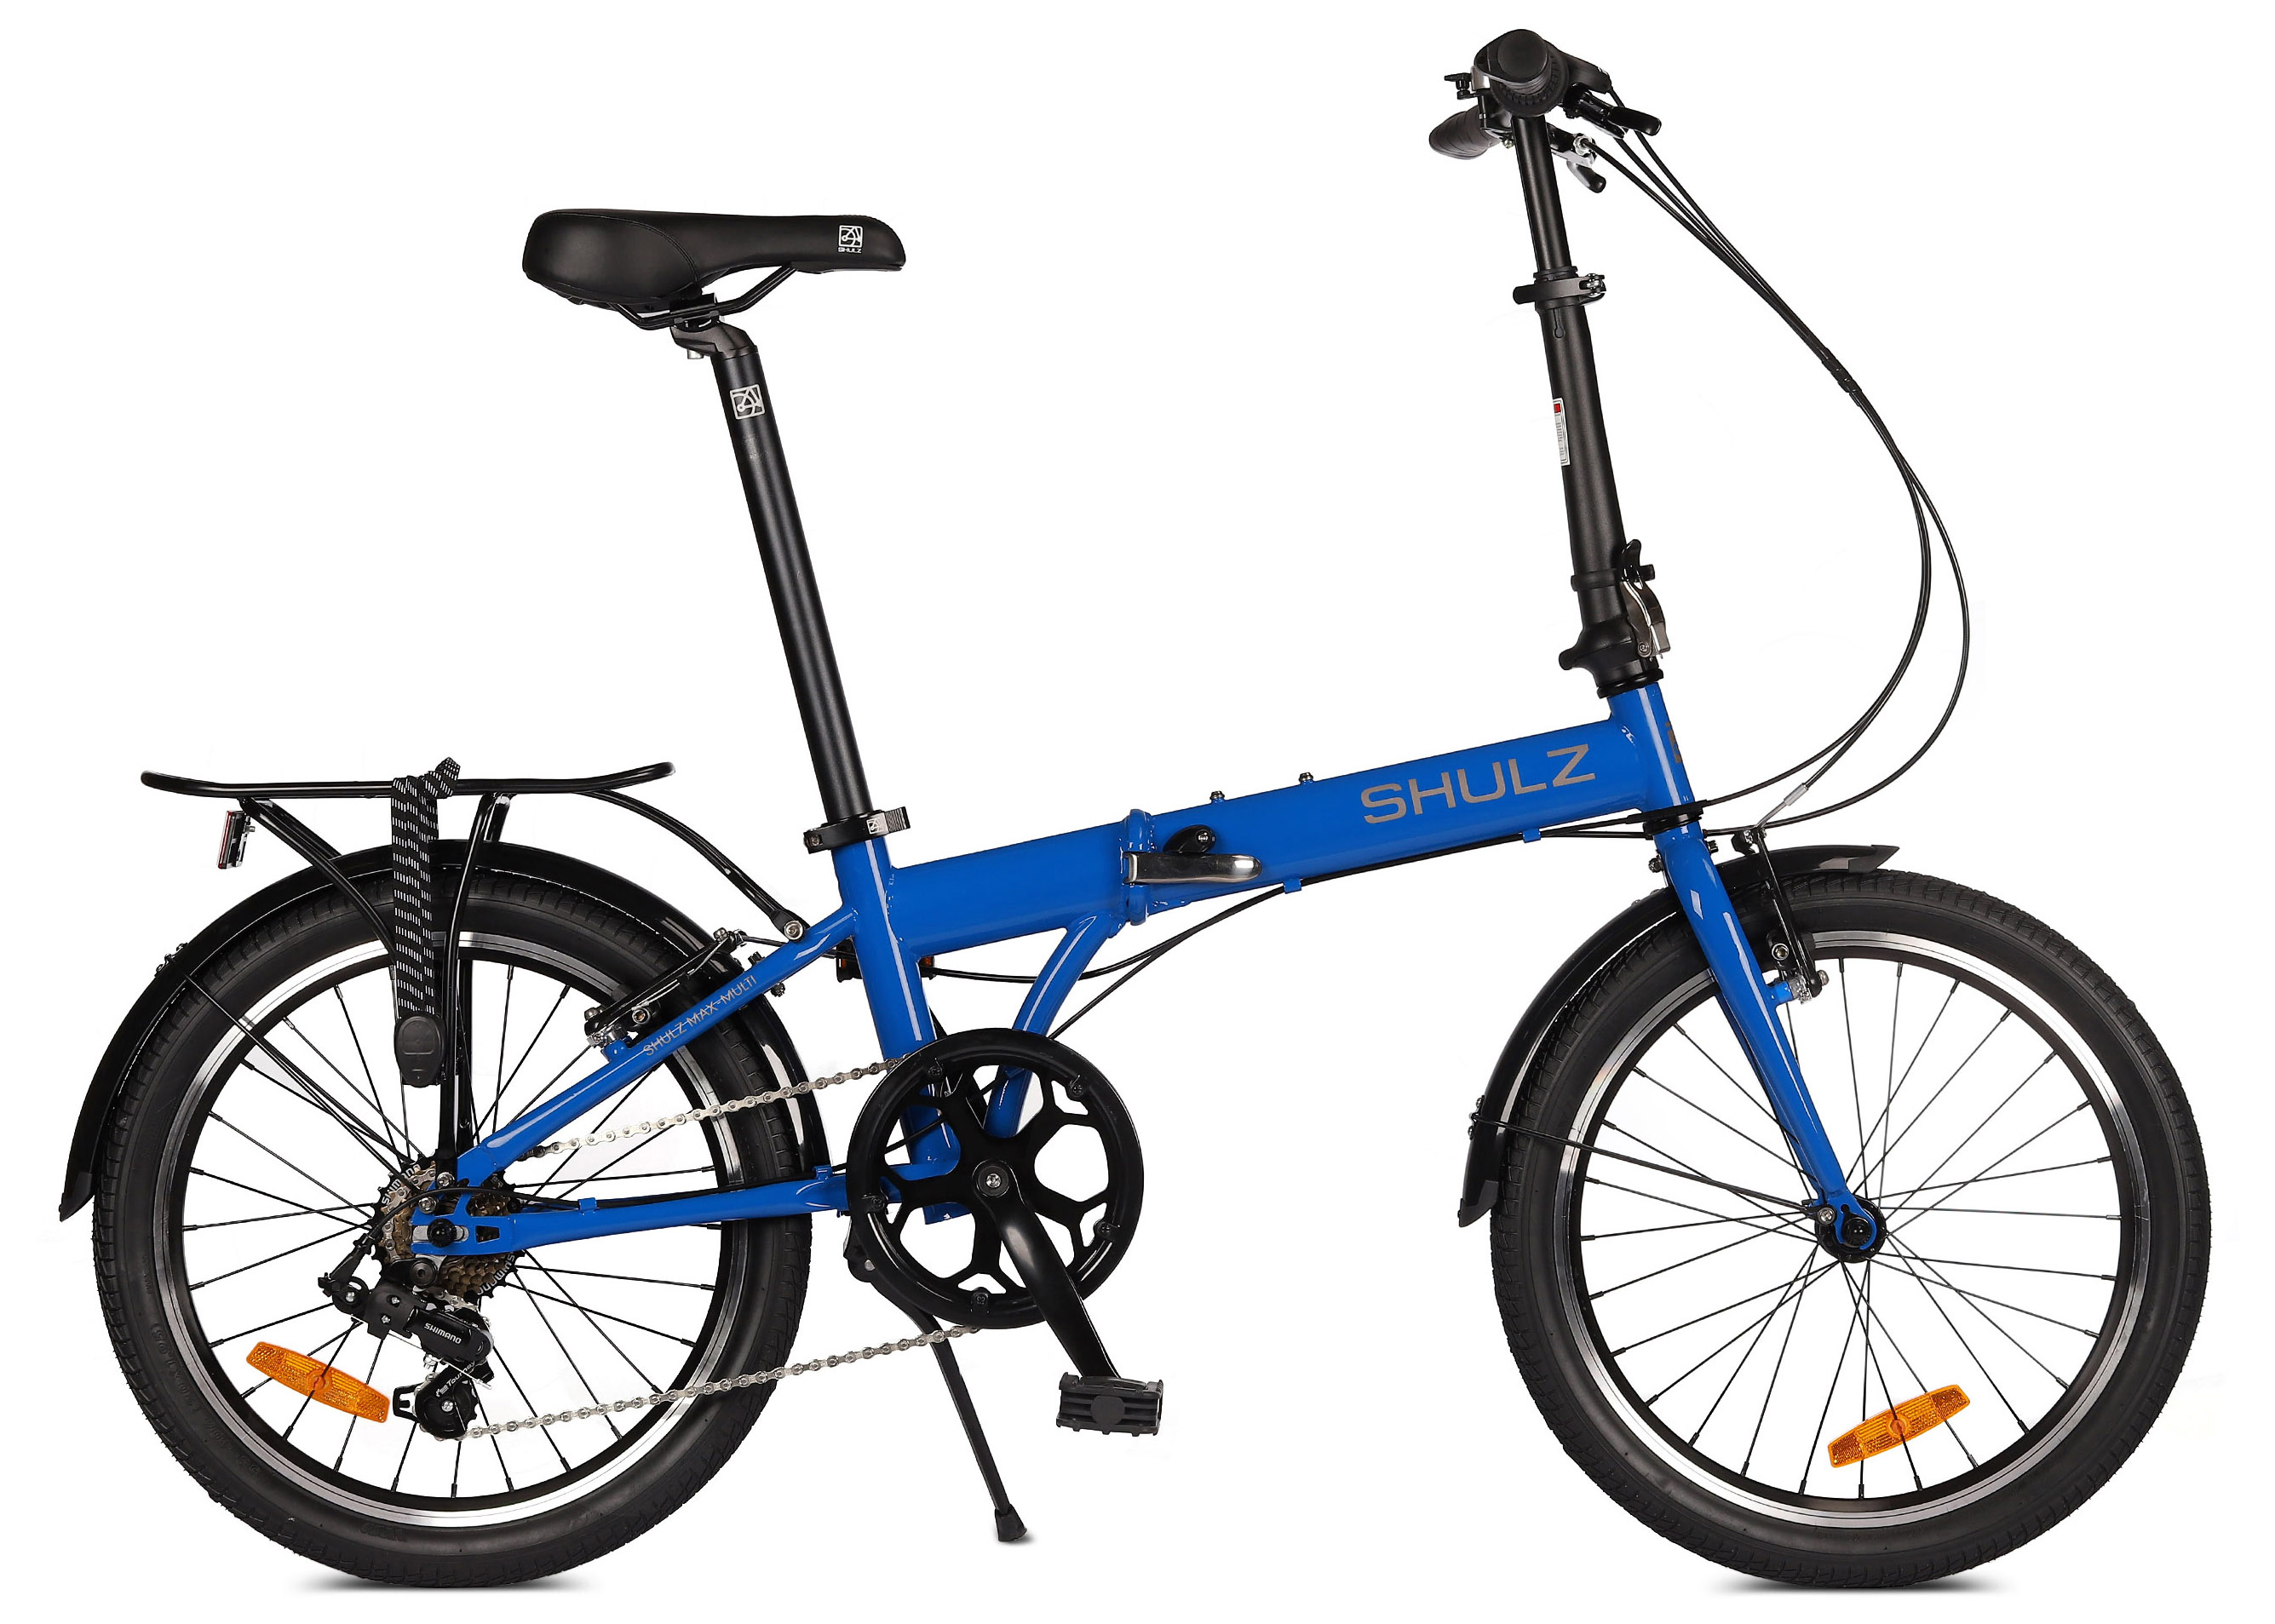  Отзывы о Складном велосипеде Shulz Max Multi 2020